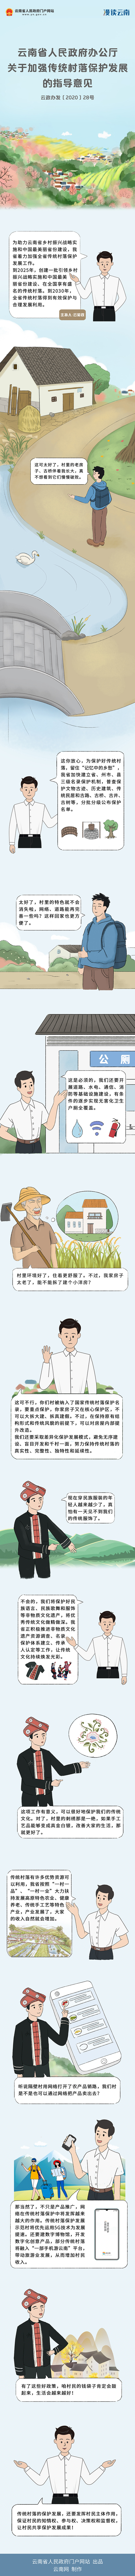 漫画解读《云南省人民政府办公厅关于加强传统村落保护发展的指导意见.jpg